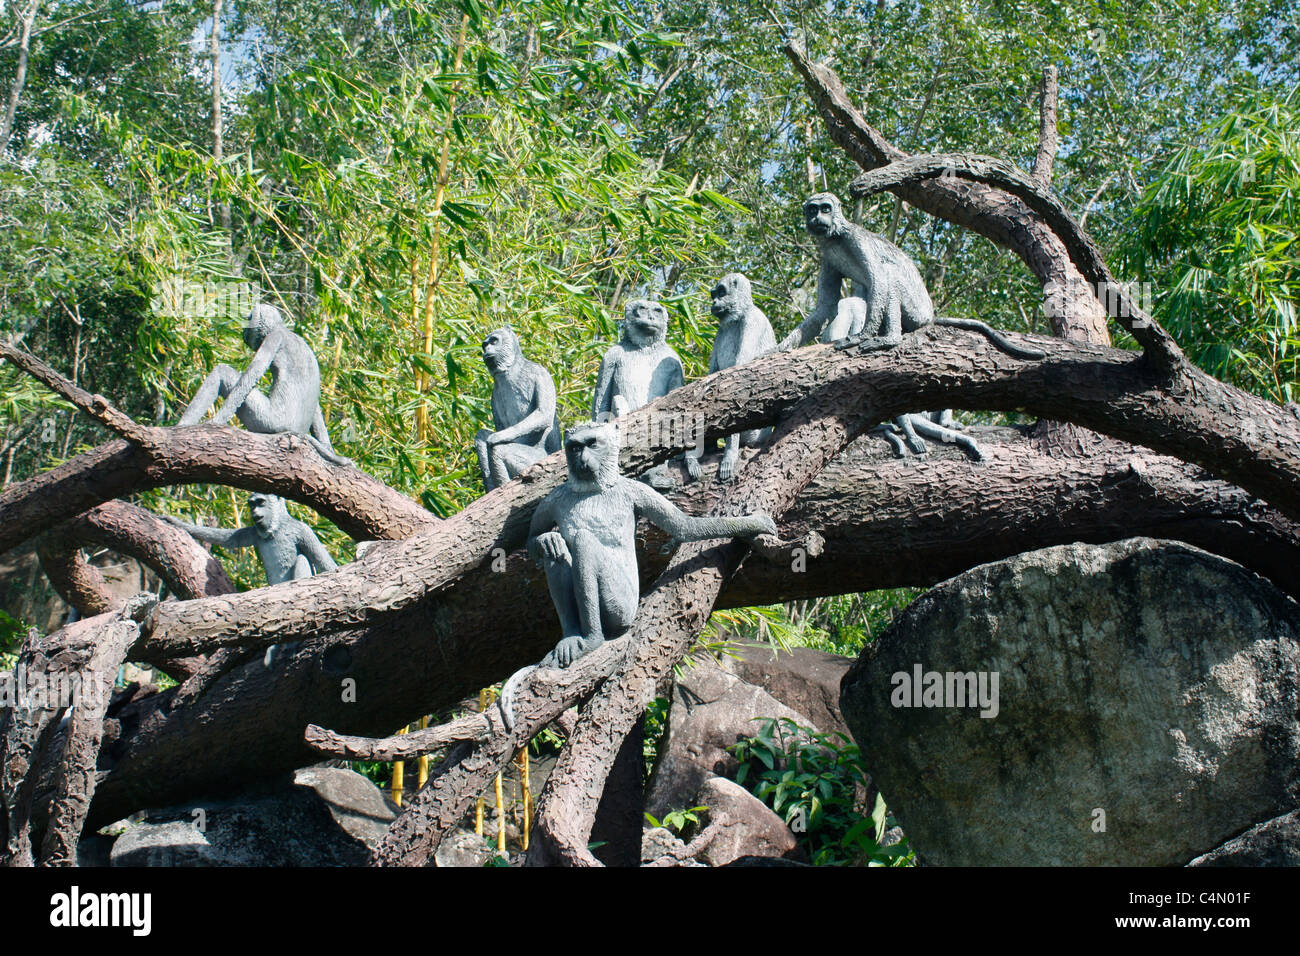 Un groupe de singes des pleurs sur la destruction de la nature. sculptés dans du bois assis sur un arbre - symbole de la déforestation Banque D'Images